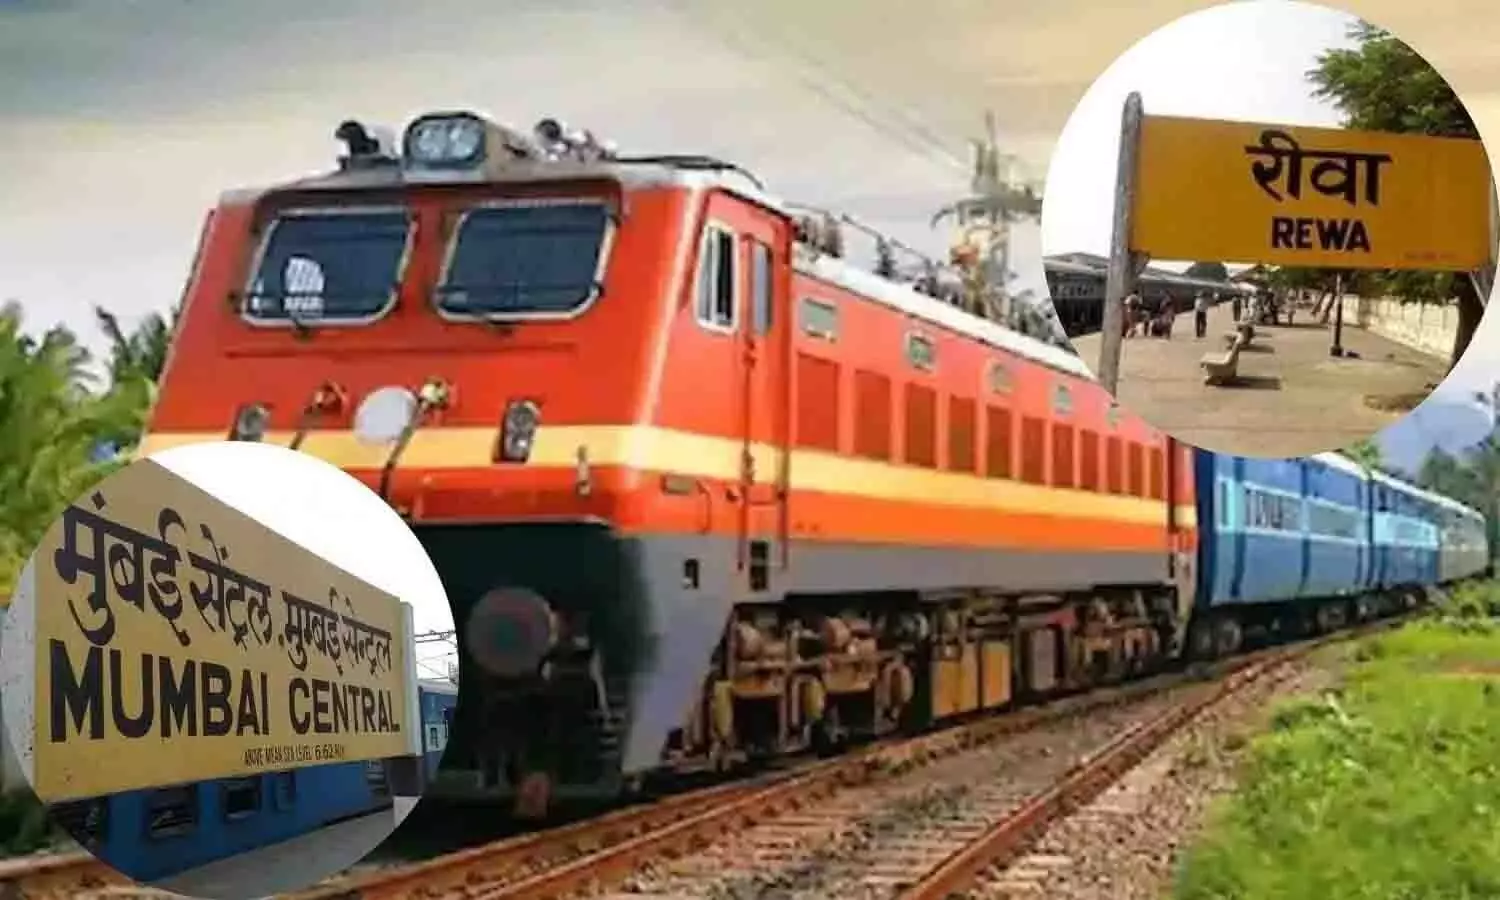 मुंबई-रीवा ट्रेन में सफर करने वाले यात्रियों के लिए जरूरी खबर, तुरंत ध्यान दे